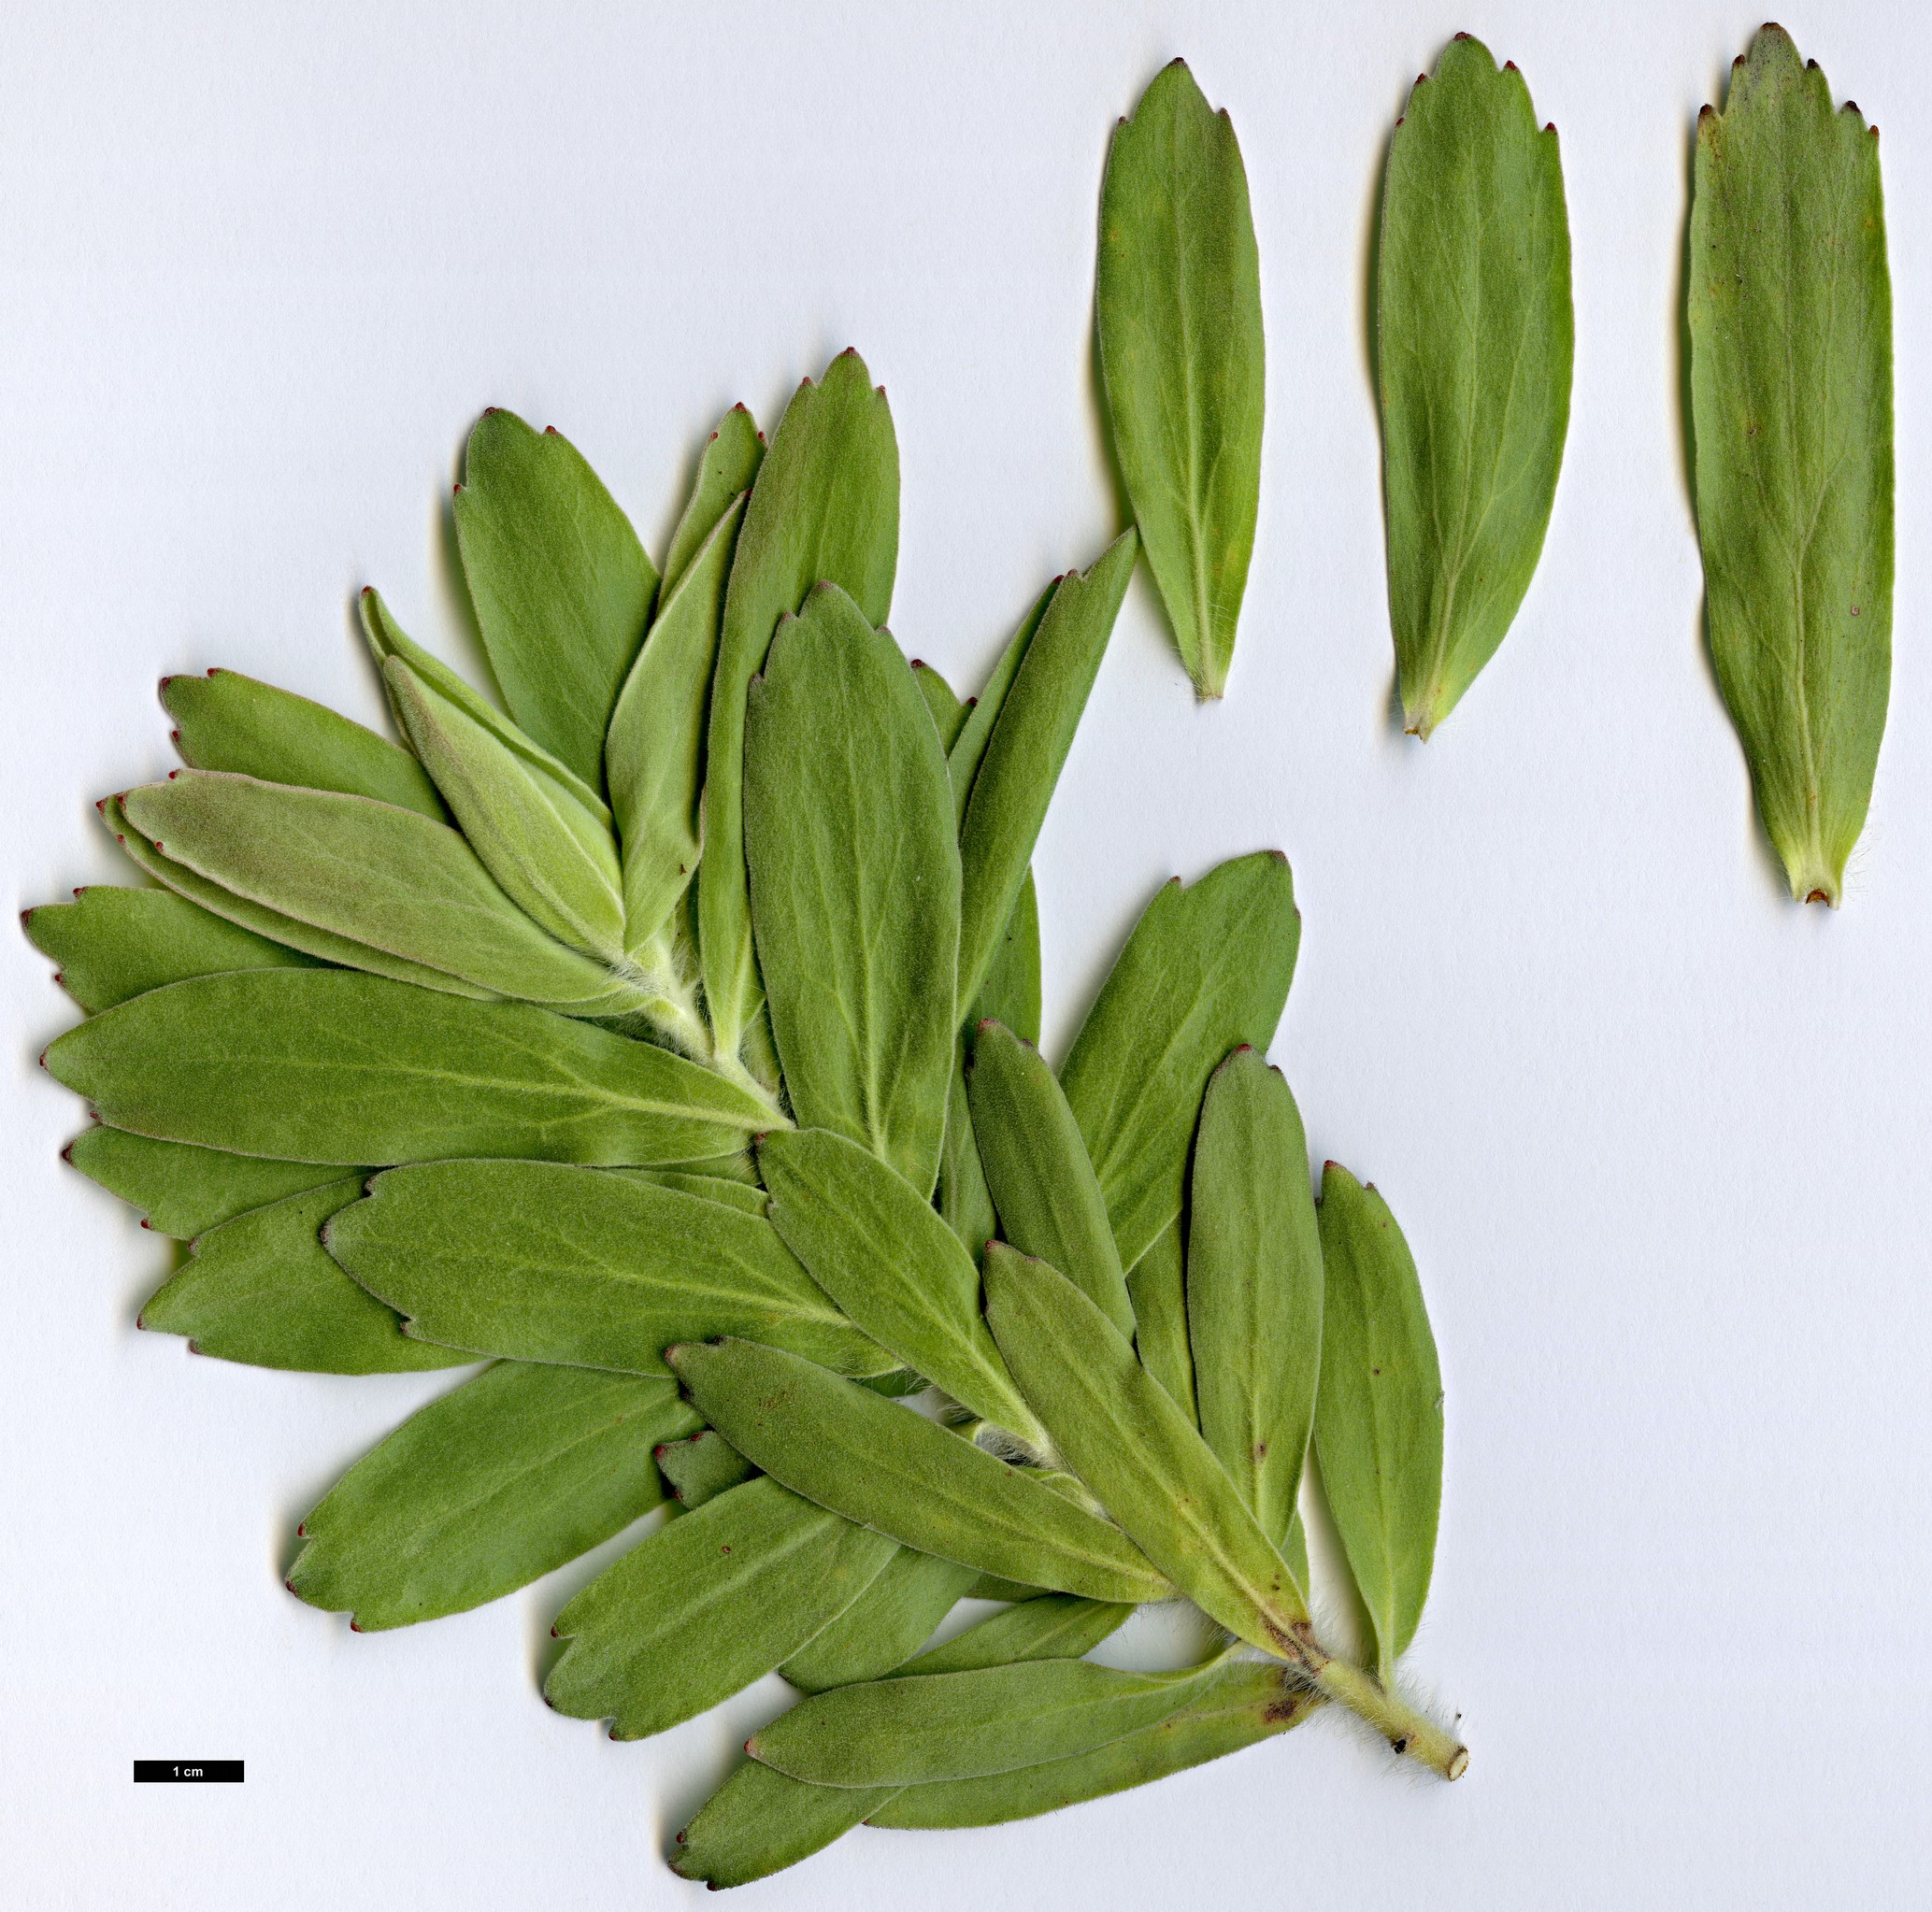 High resolution image: Family: Proteaceae - Genus: Leucospermum - Taxon: grandiflorum